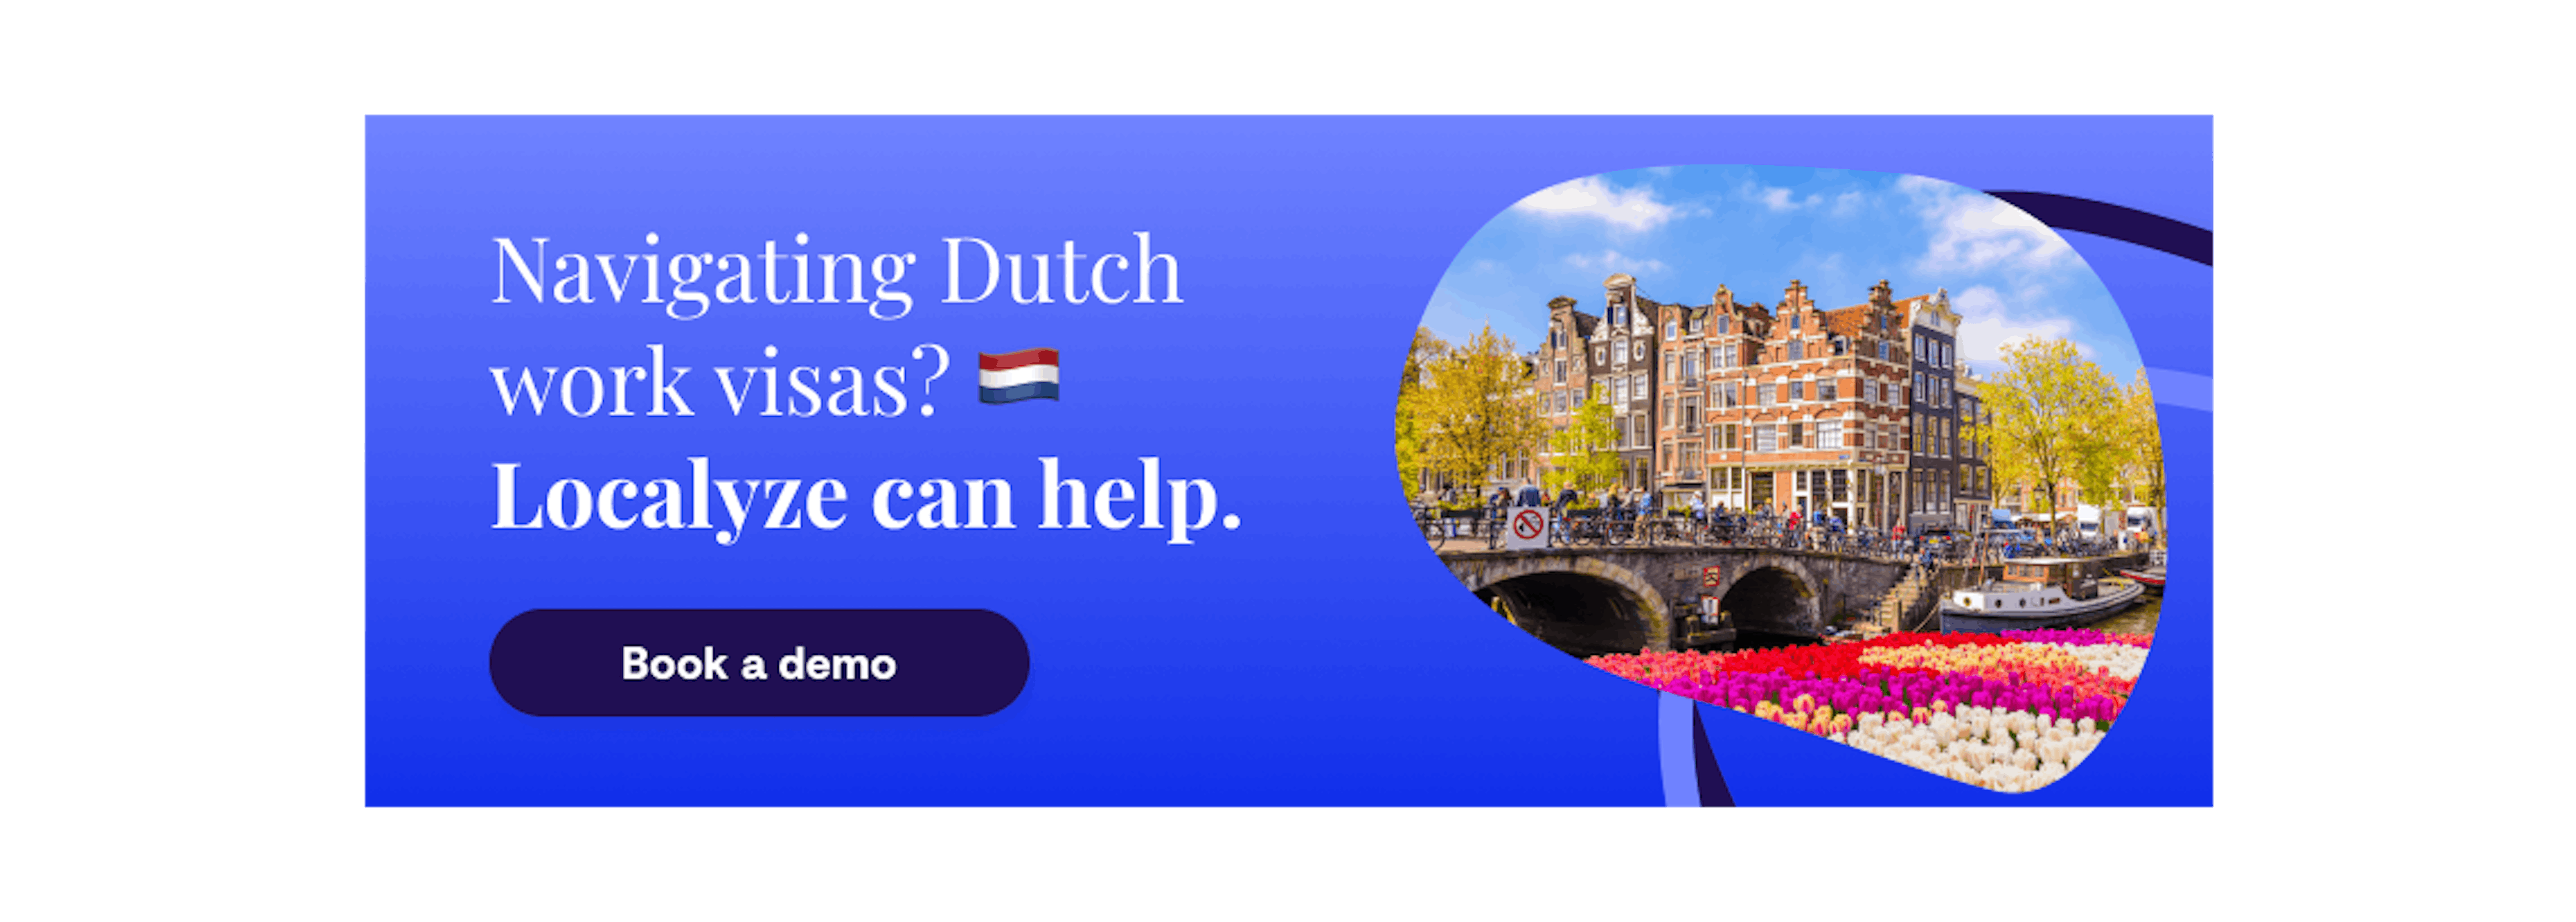 Dutch work visas with Localyze